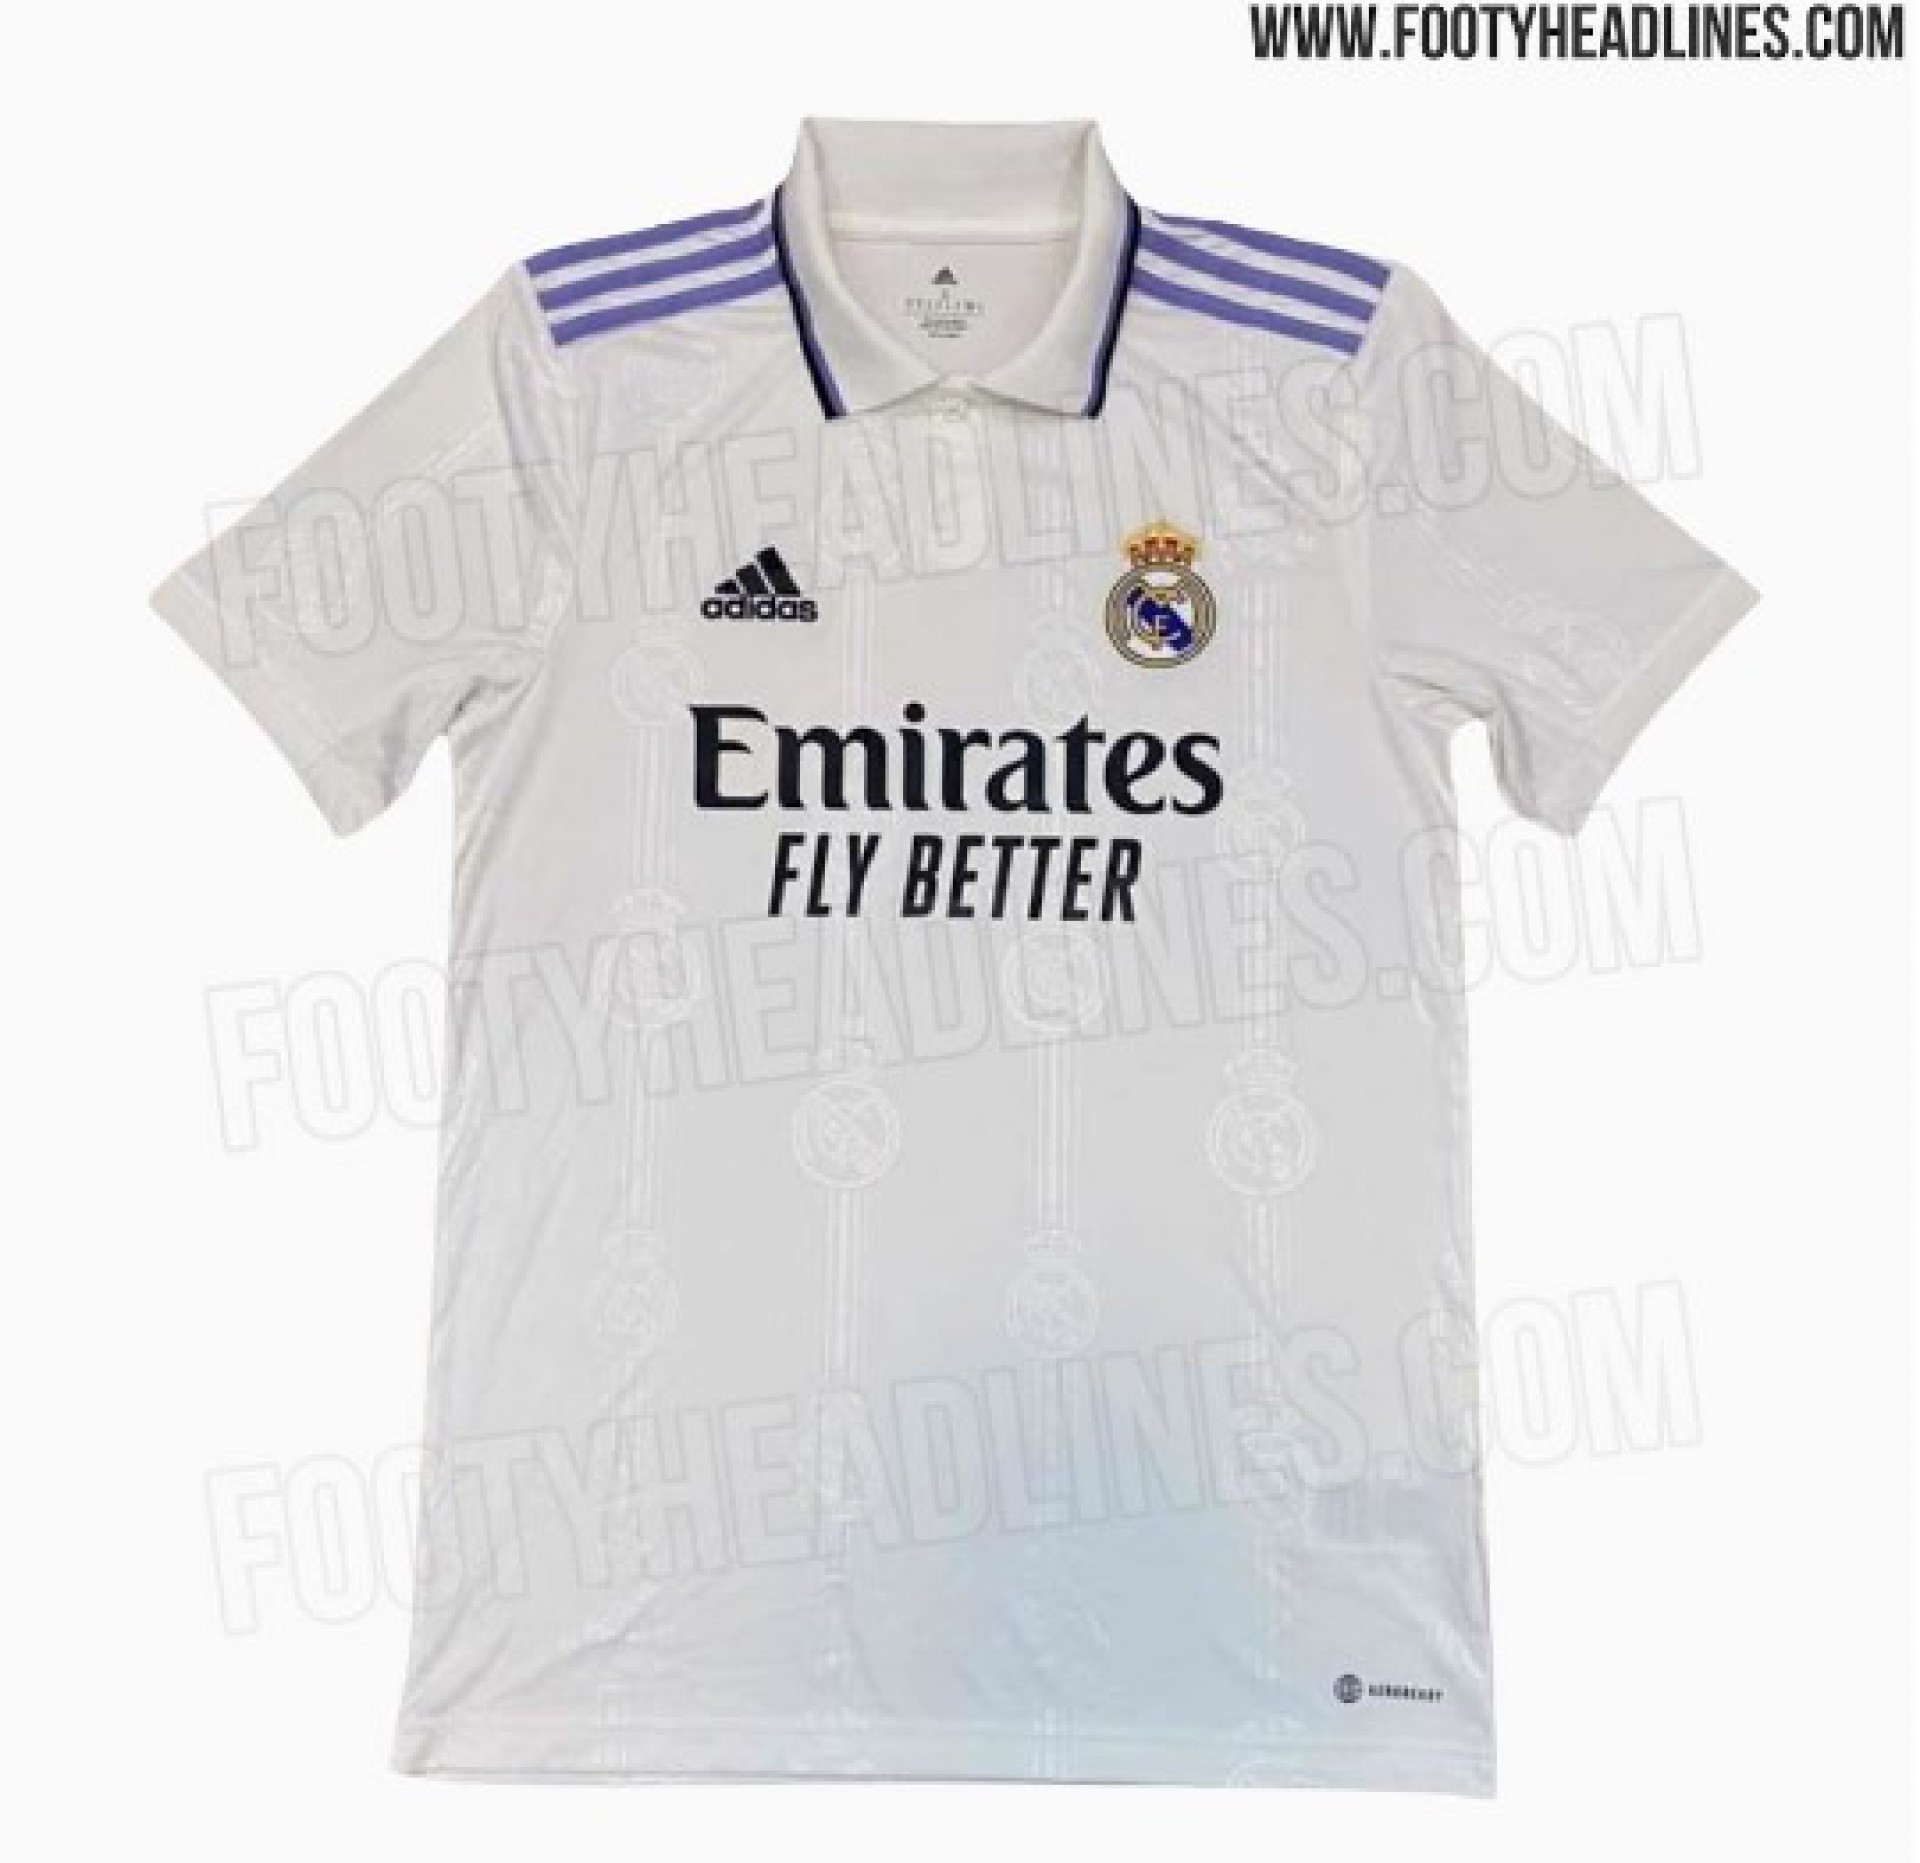 Nova camisa do Real Madrid para a temporada 2022/23 - Reprodução/Footy Headlines